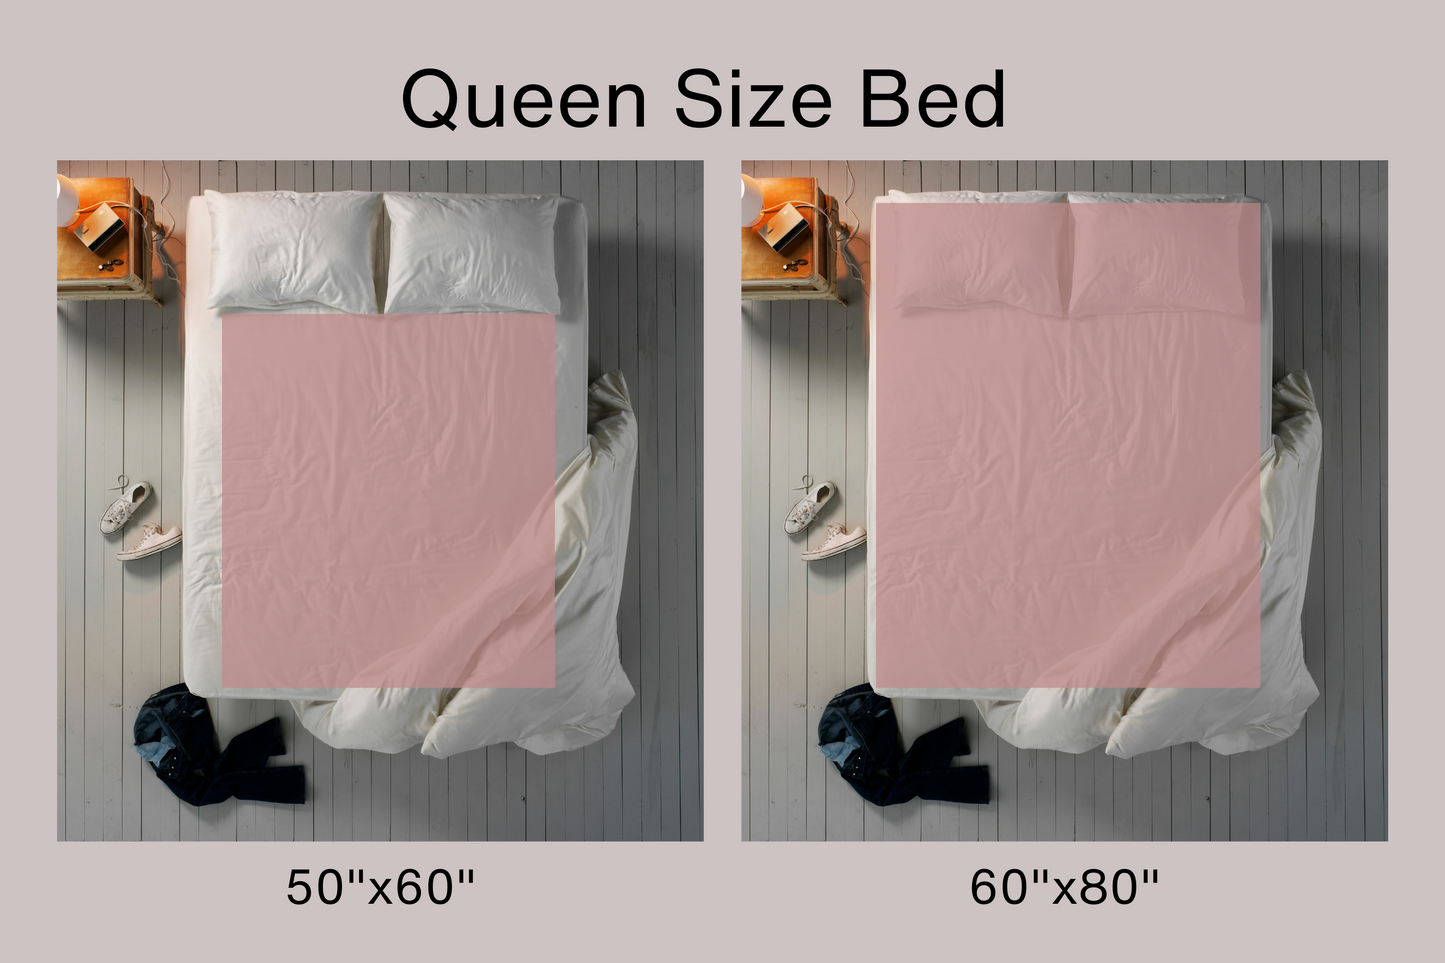 velveteen blanket - 50x60 and 60x80 queen size blanket